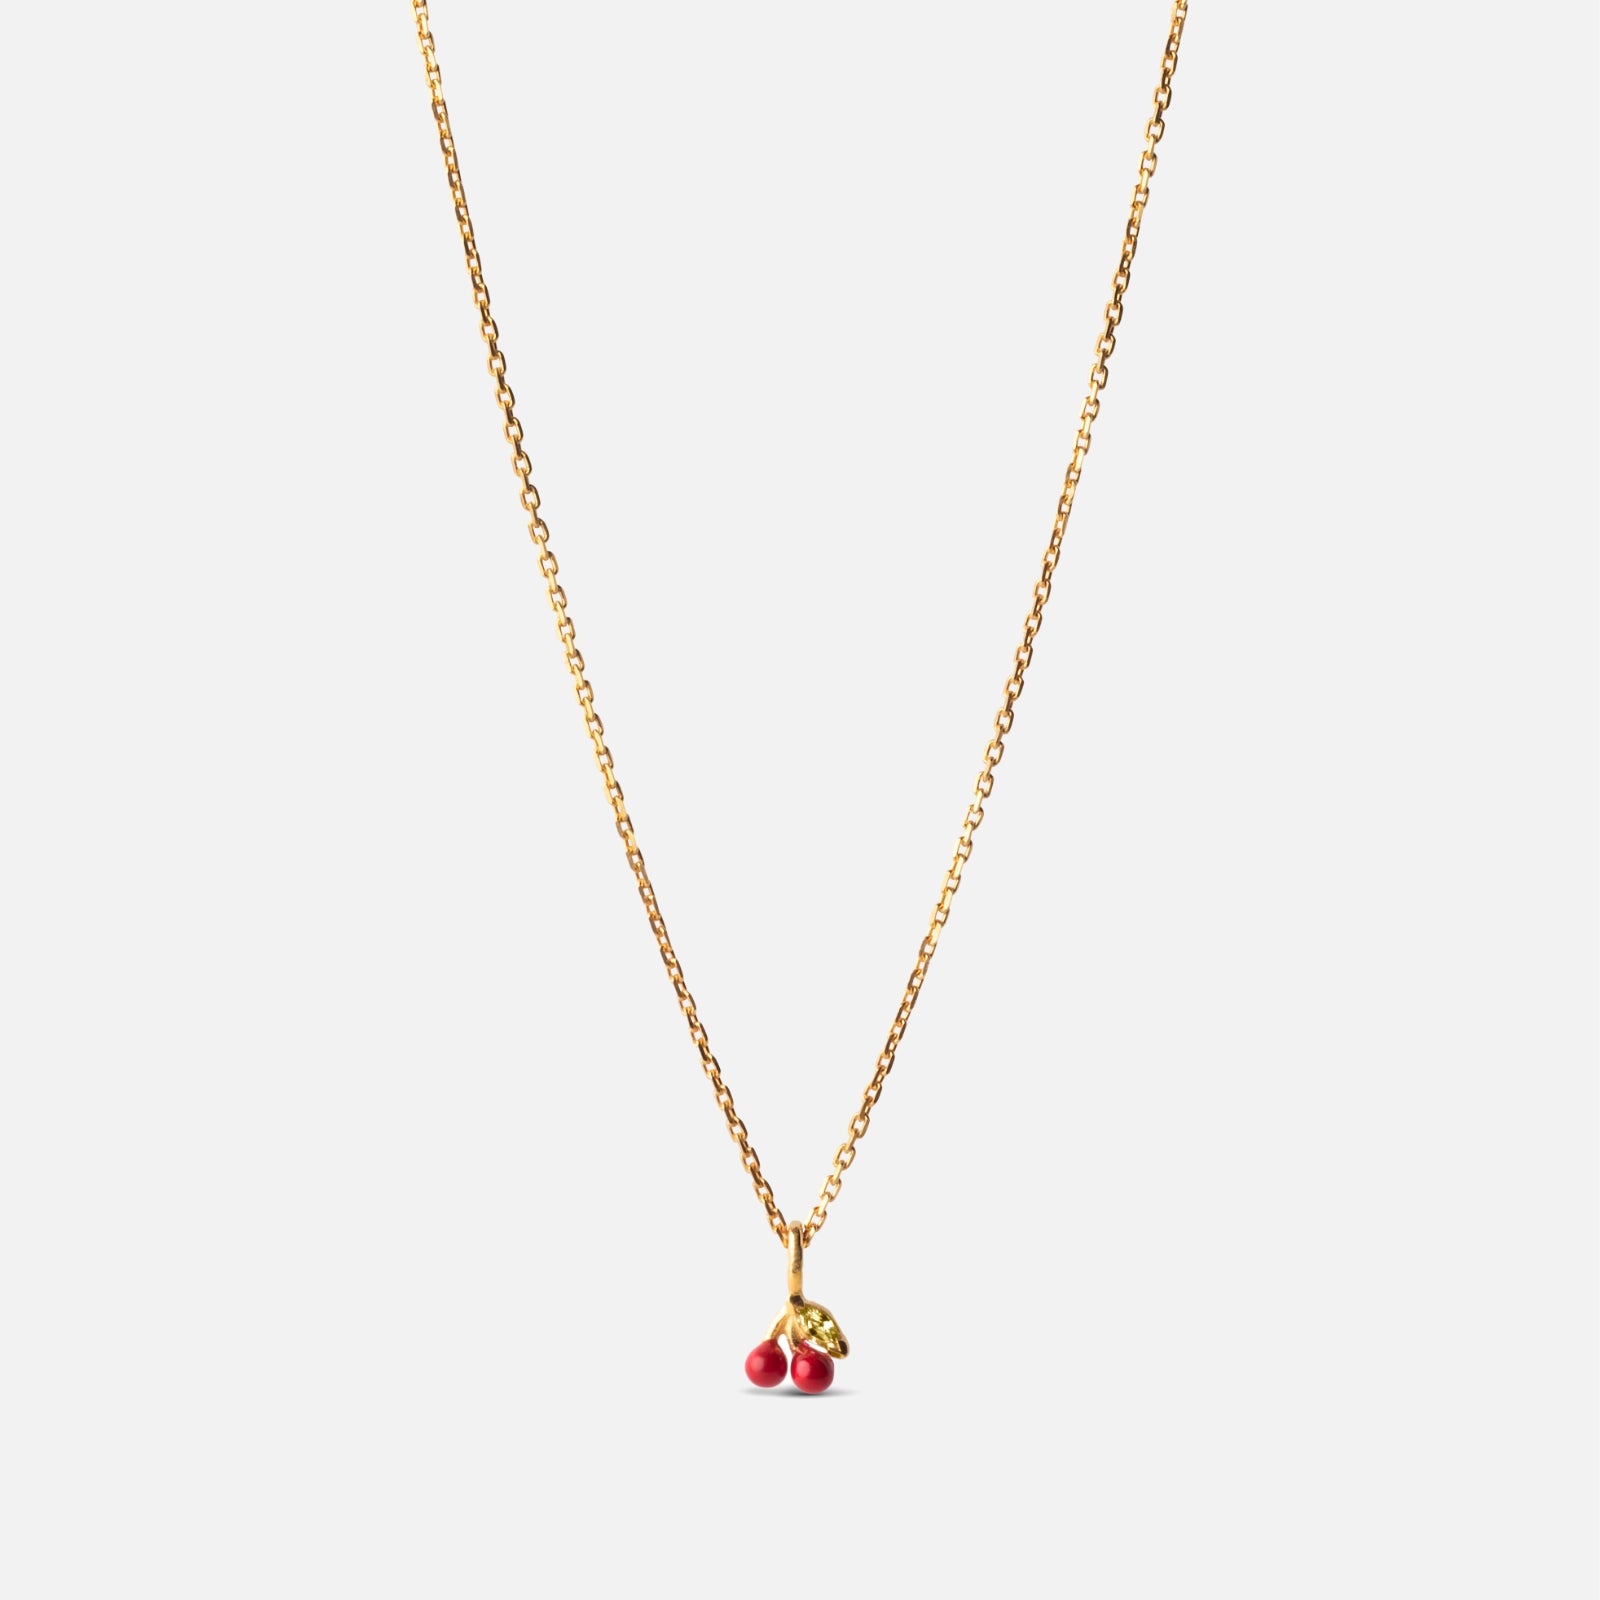 Cherry Necklace fra Enamel Copenhagen med røde kirsebær